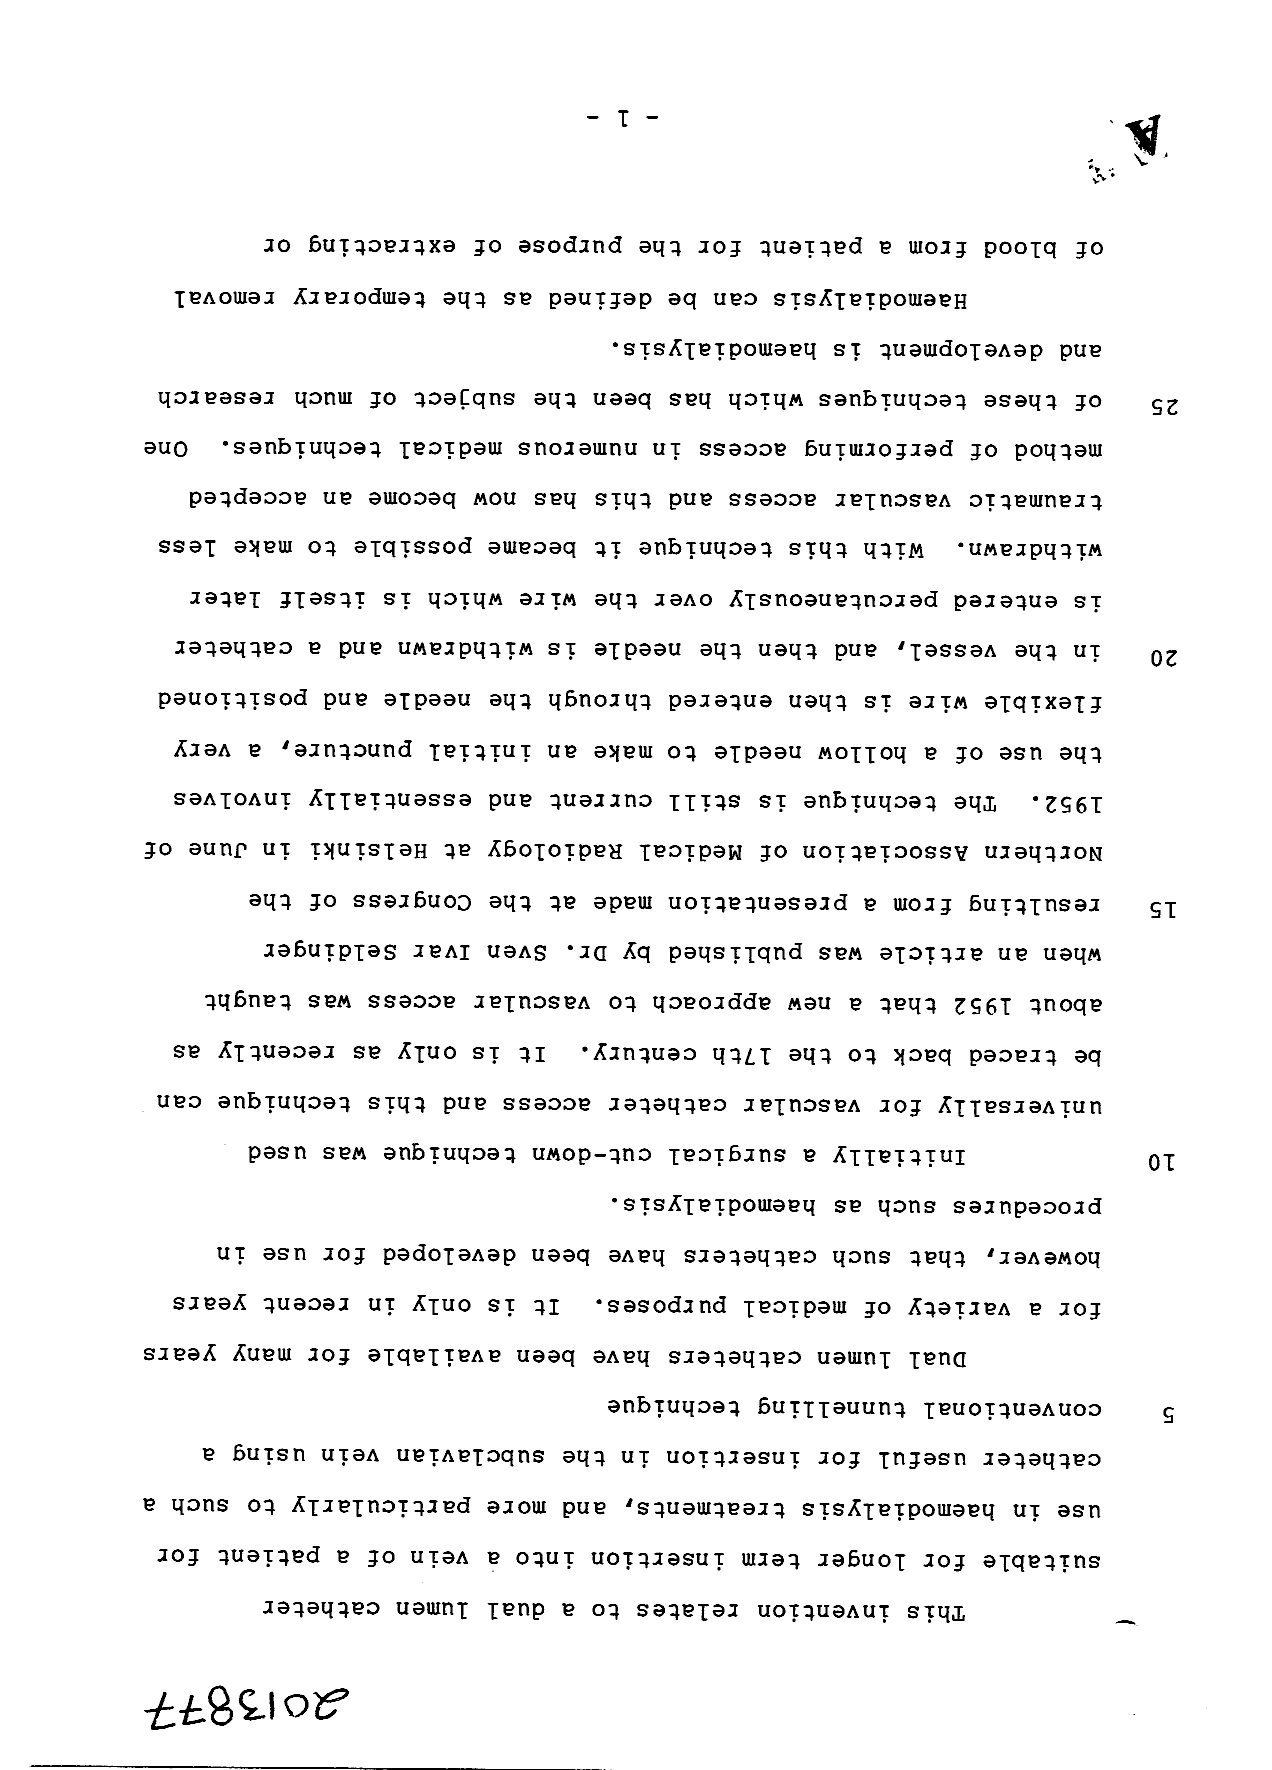 Canadian Patent Document 2013877. Description 19990922. Image 1 of 12